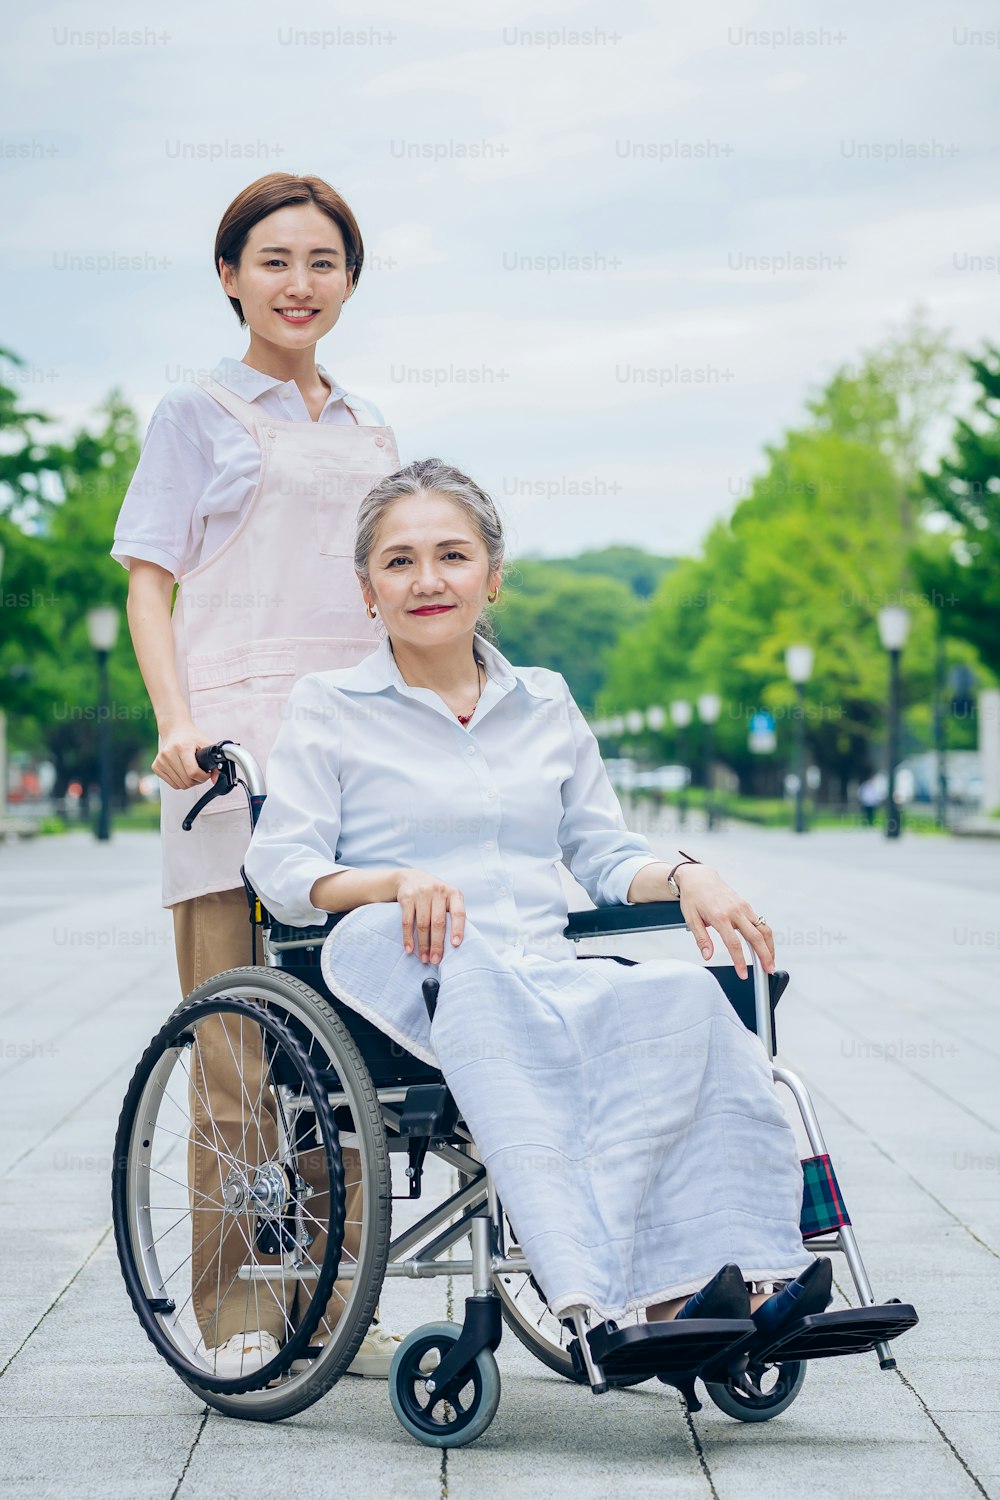 Uma mulher em uma cadeira de rodas e uma mulher jovem em um avental para cuidar ao ar livre